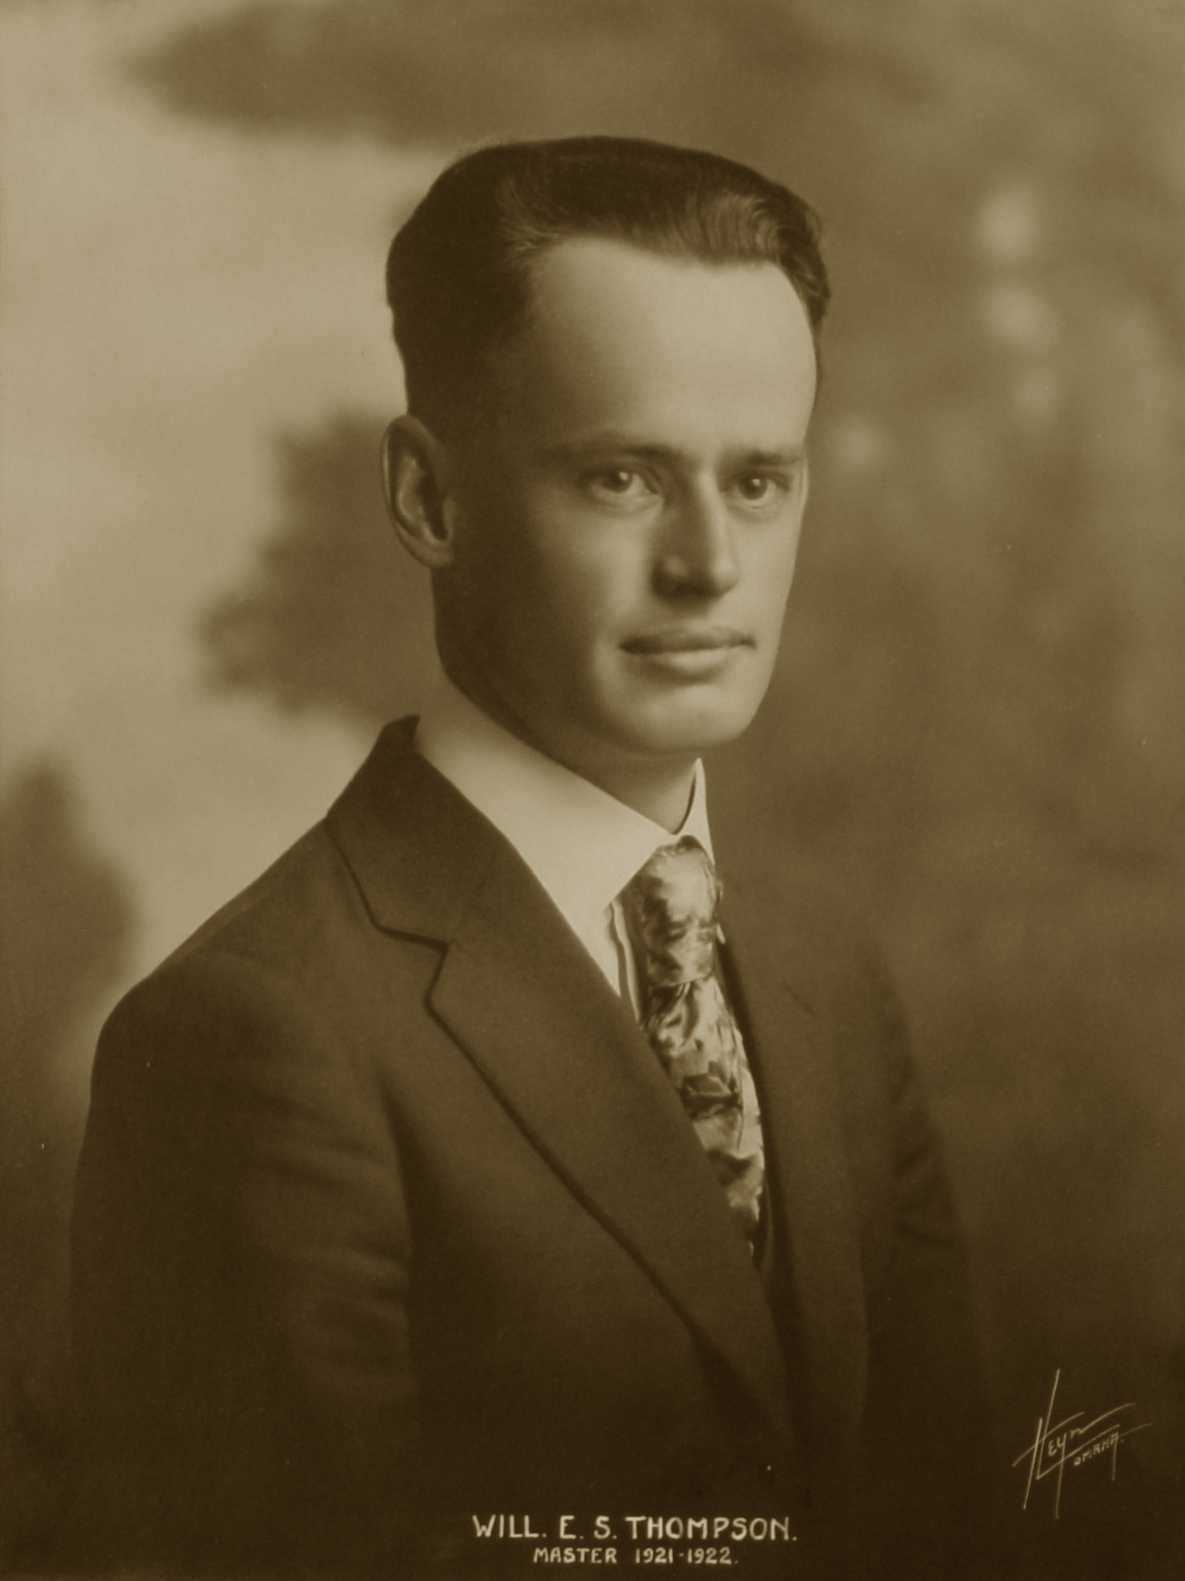 William E. S. Thompson, 1921-1922